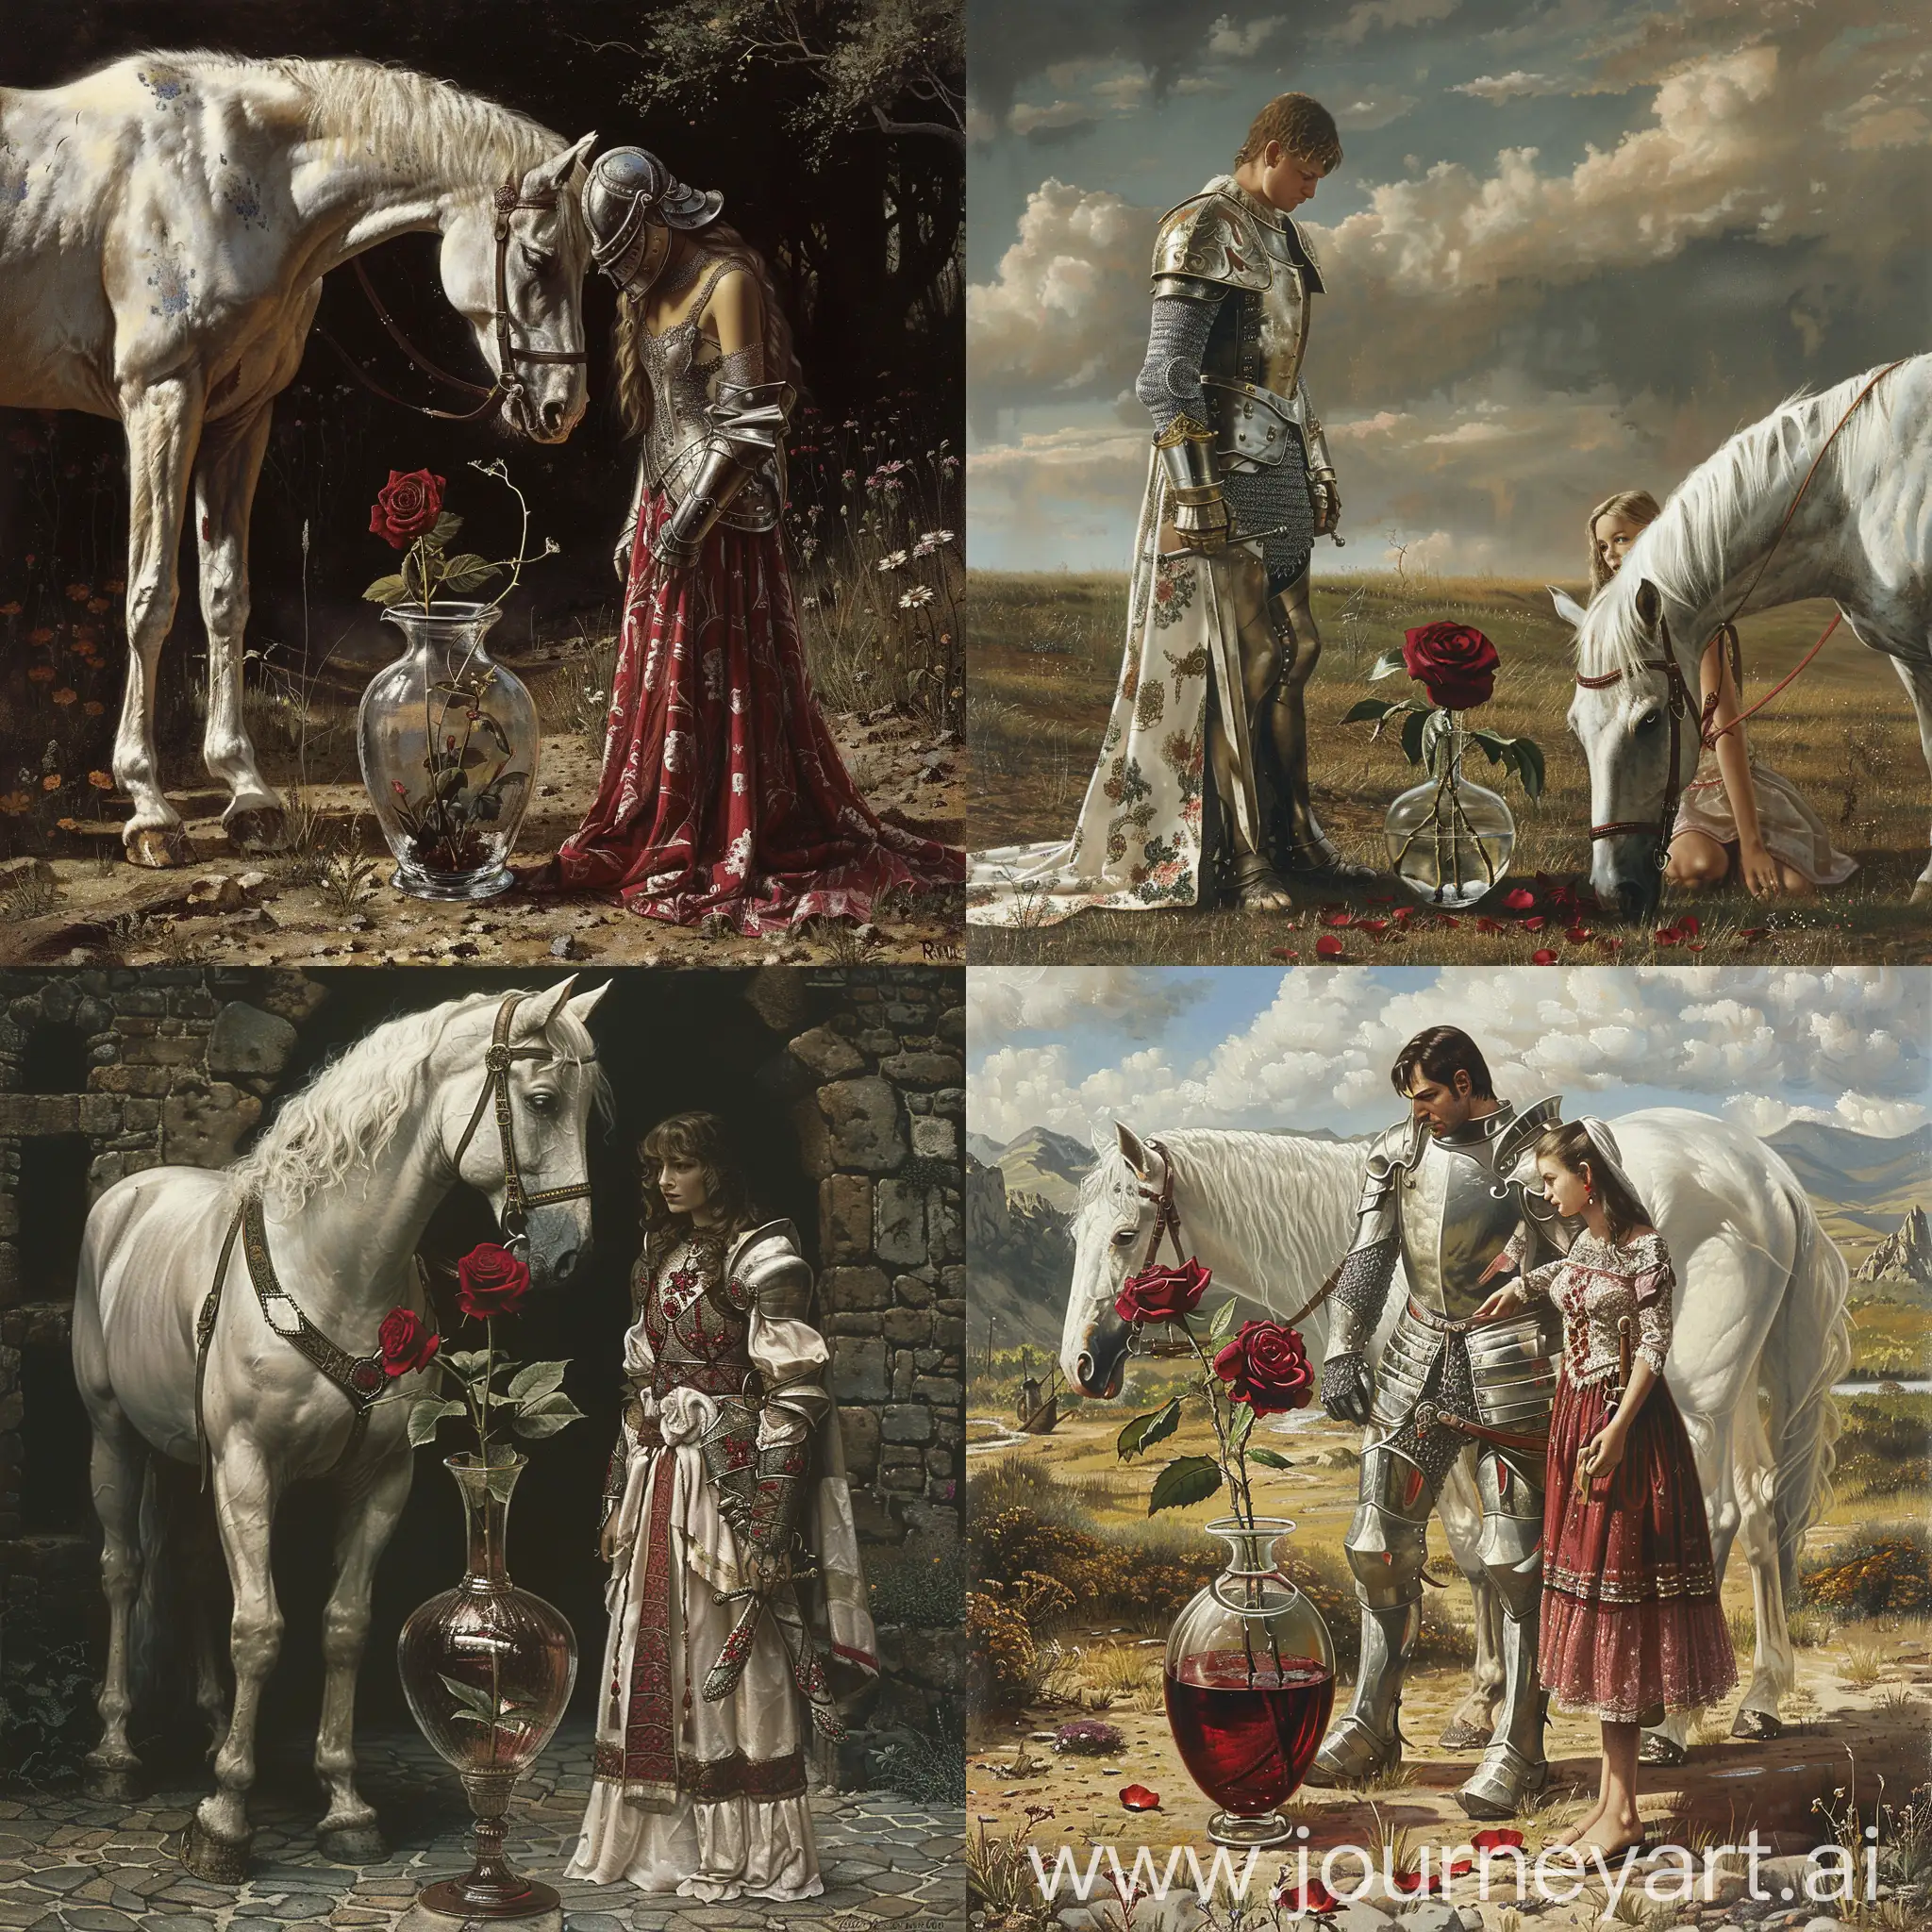 рыцарь,стеклянная ваза у ног с алой розой,милая девушка,белый конь,